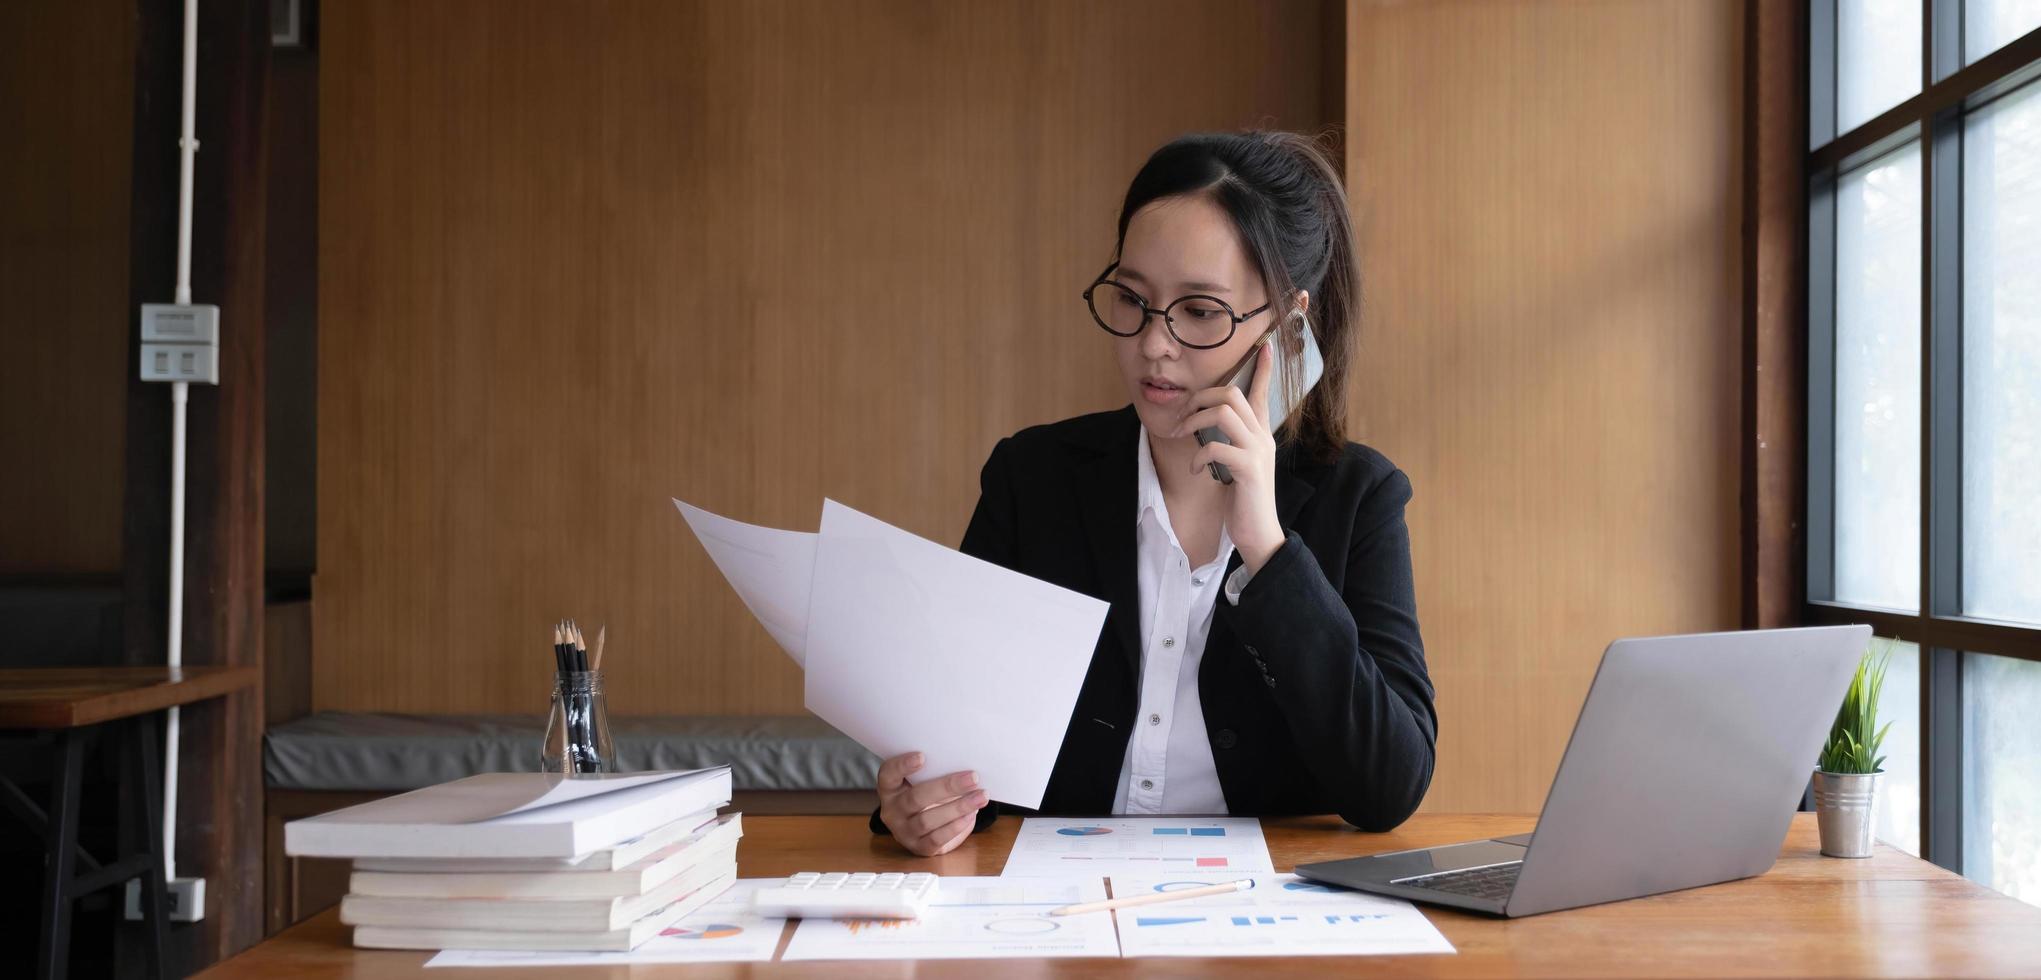 una mujer de negocios asiática seria que usa una laptop mirando la computadora hablando por teléfono consulta al cliente sentada en el escritorio, la gerente de ventas enfocada hace una llamada de negocios móvil para discutir el trabajo con el cliente en la oficina foto